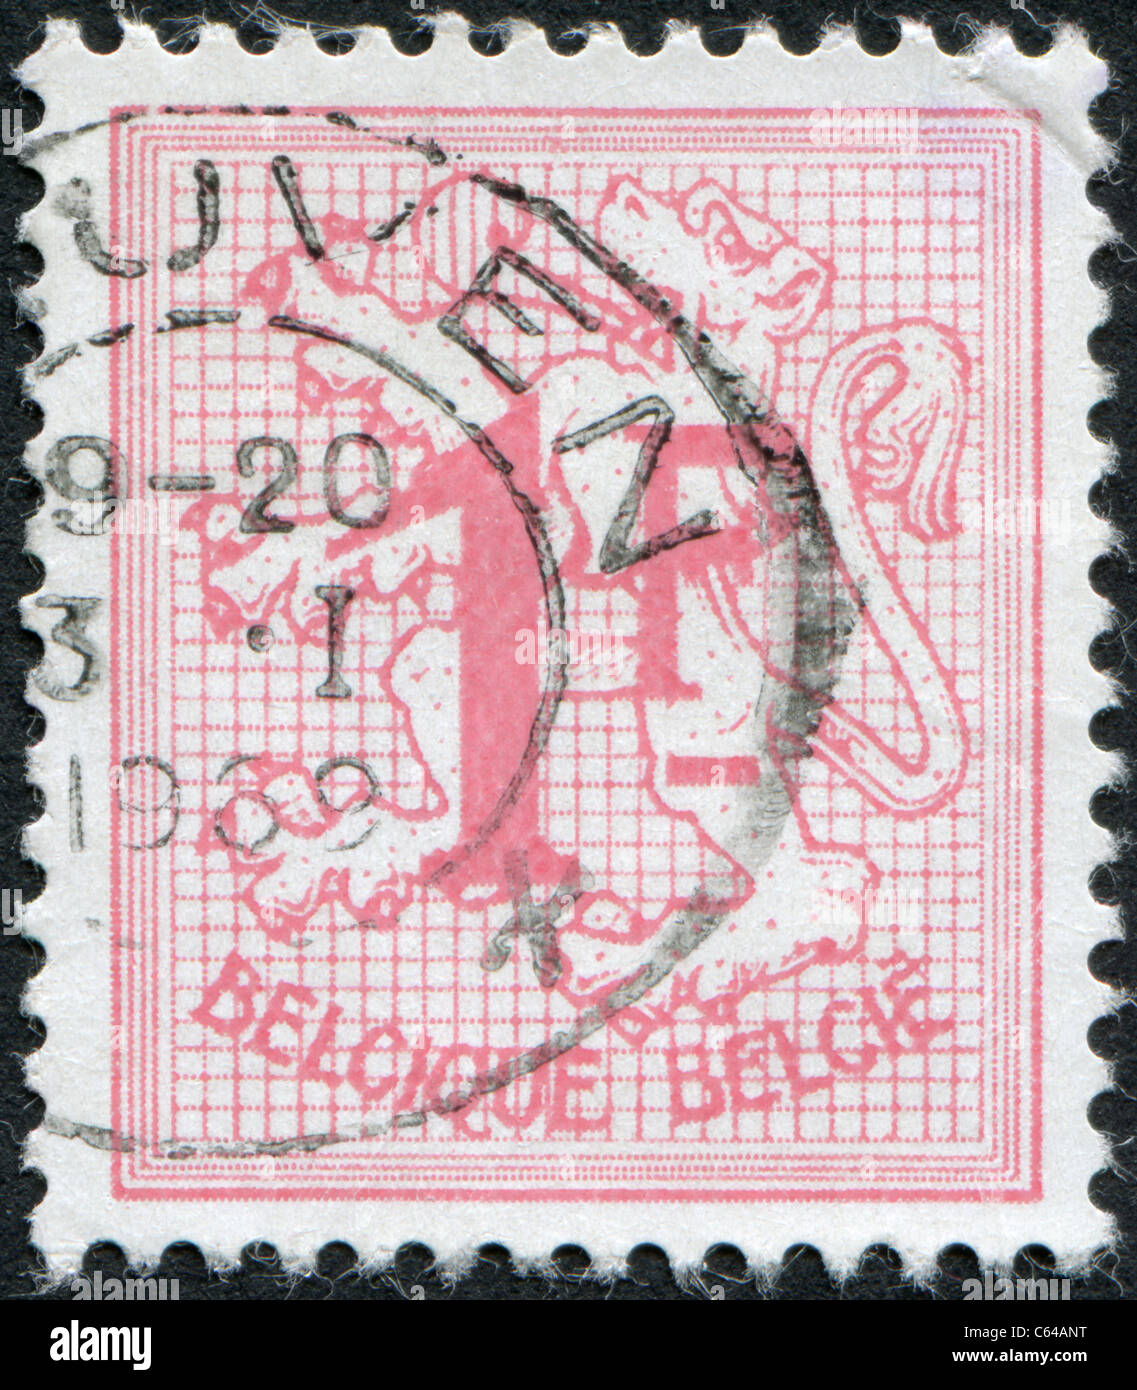 Belgique - 1951 : un timbre imprimé en Belgique, montre les armoiries, Lion Banque D'Images